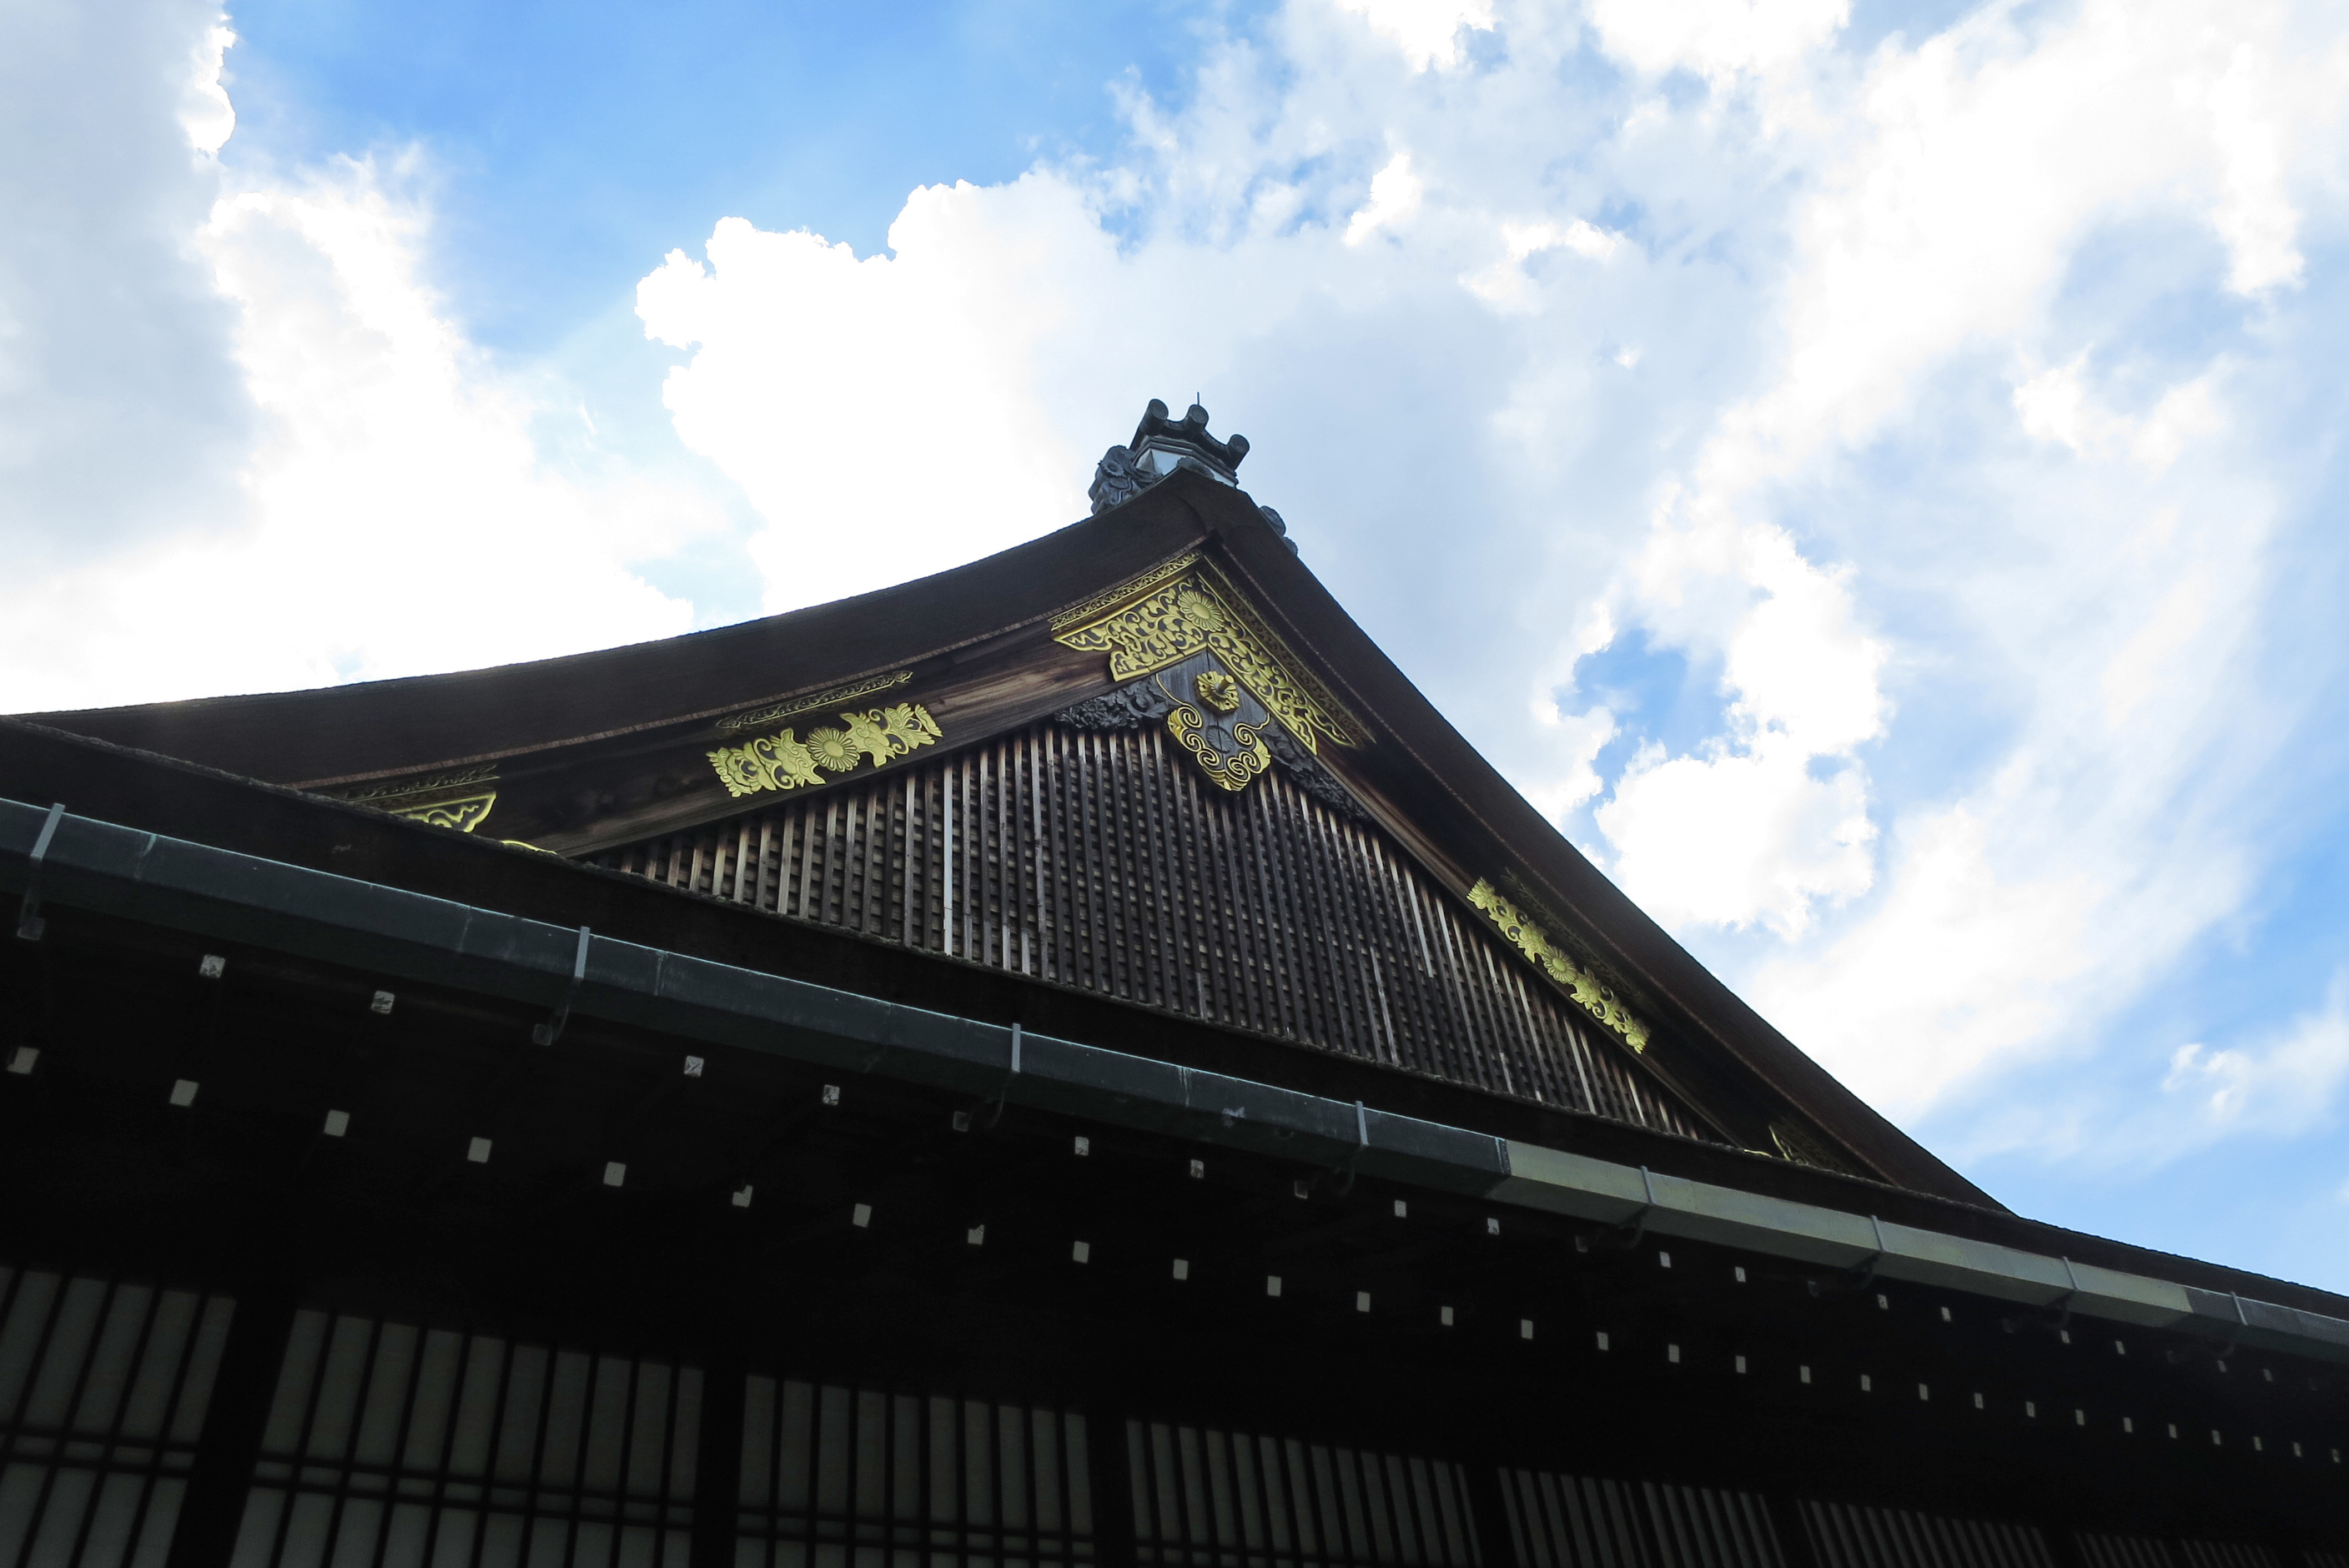 御常御殿（おつねごてん）の屋根。京都御所内は、どれも1つ1つの造りに品があり、素晴らしいです。